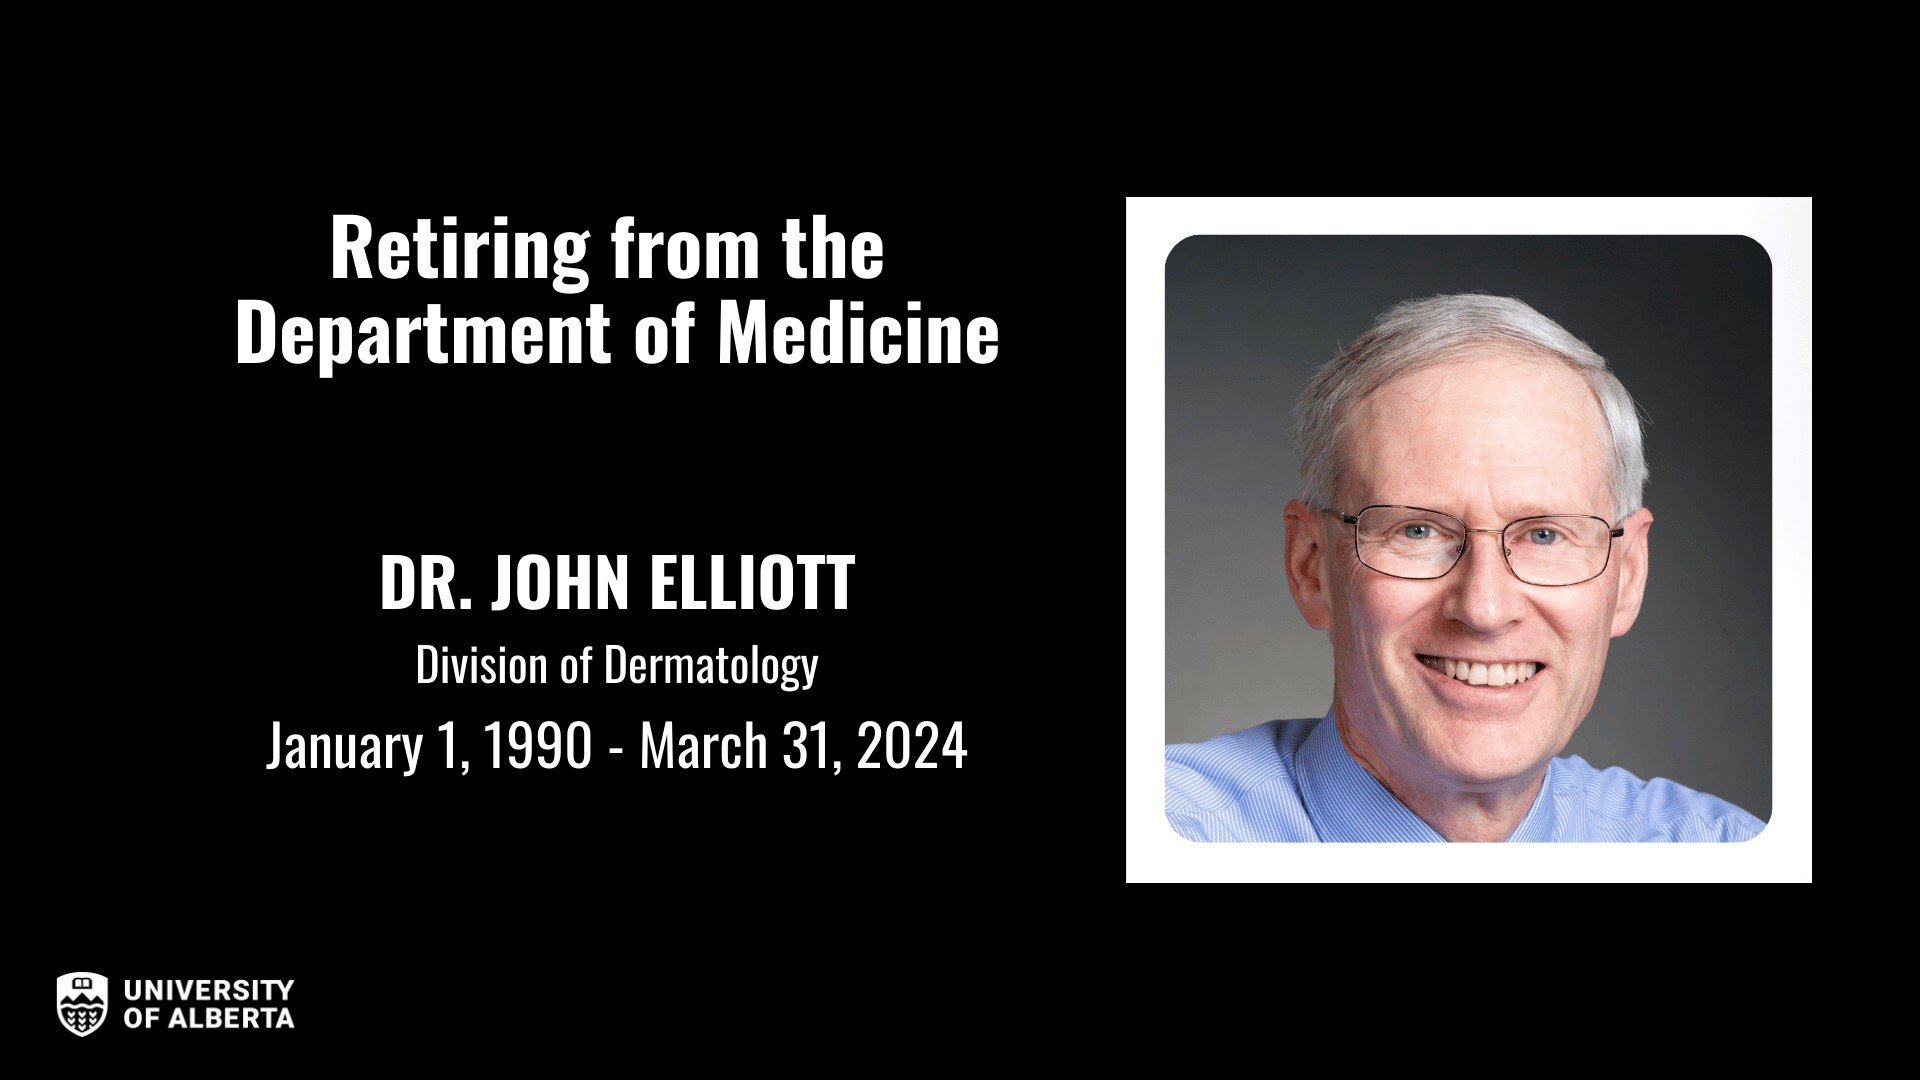 Dr. John Elliot